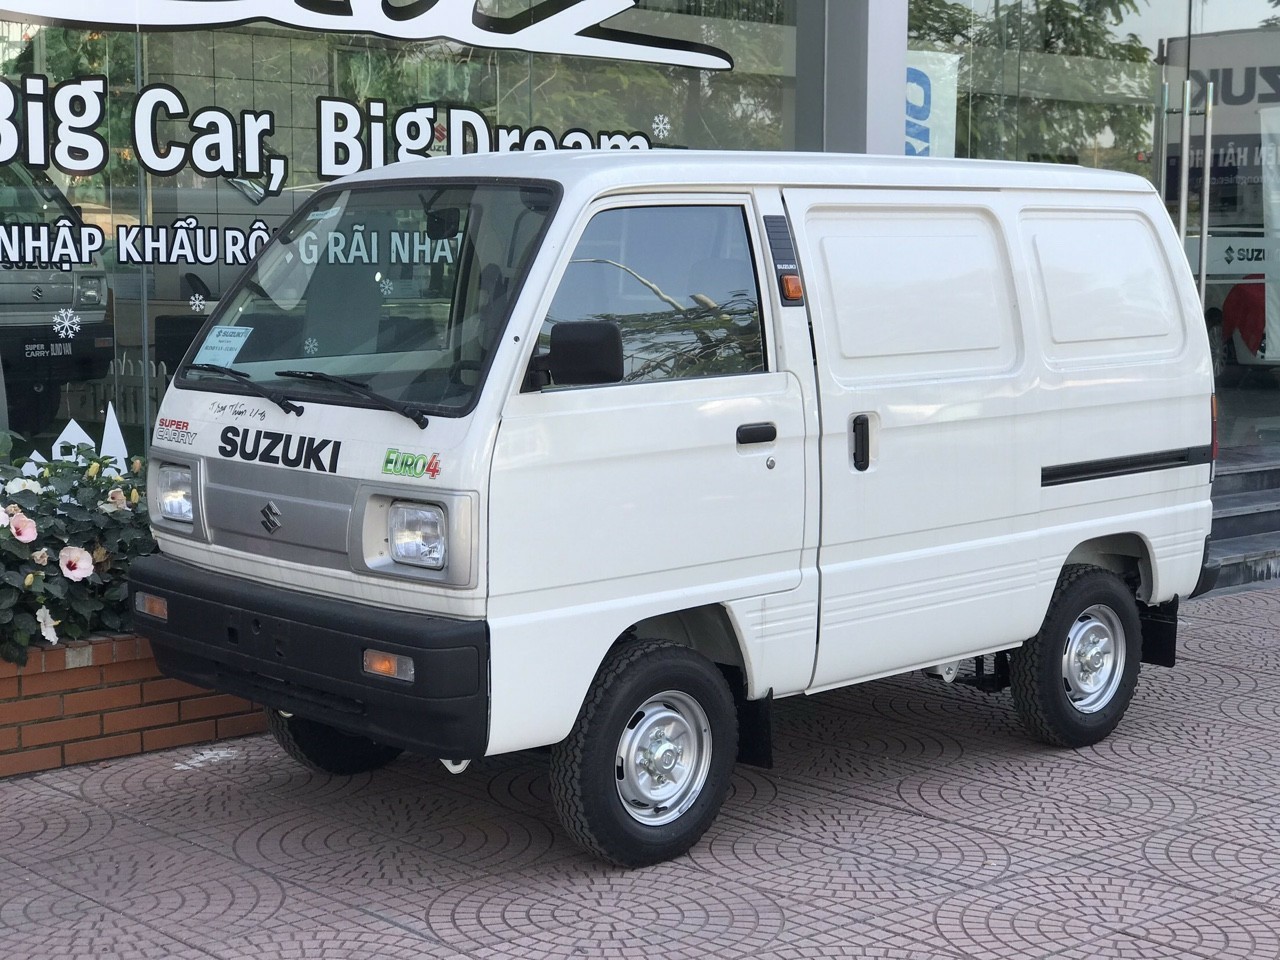 Suzuki blindvan